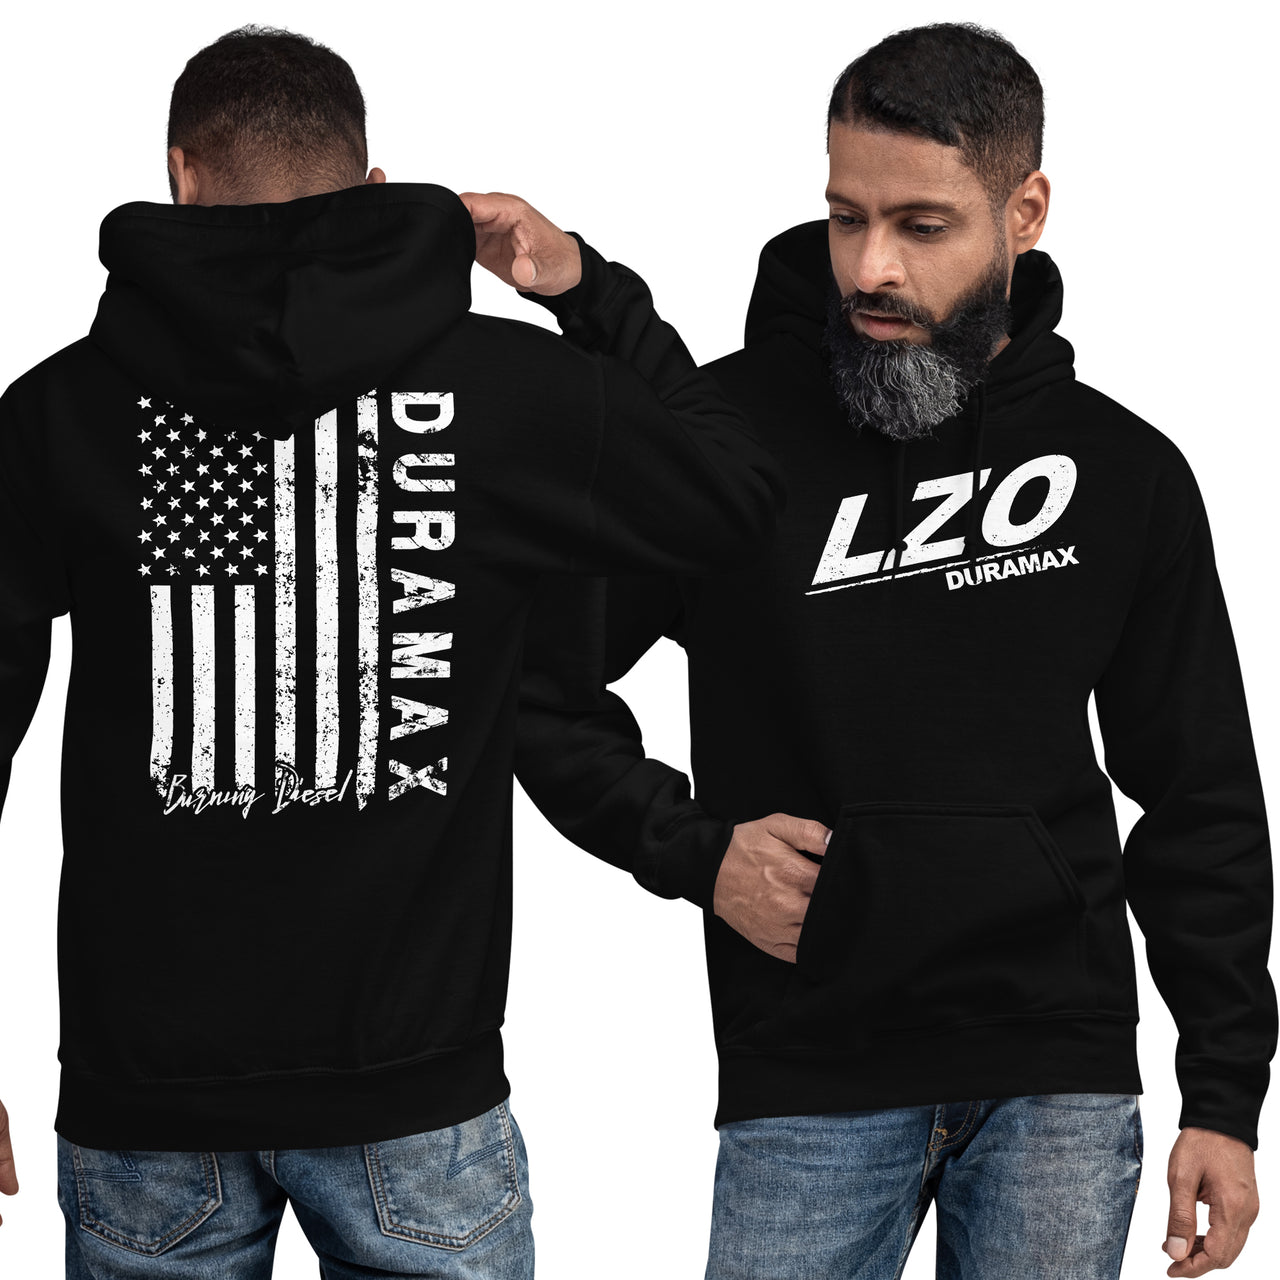 LZO 3.0 Duramax Hoodie Sweatshirt With American Flag Design modeled in black